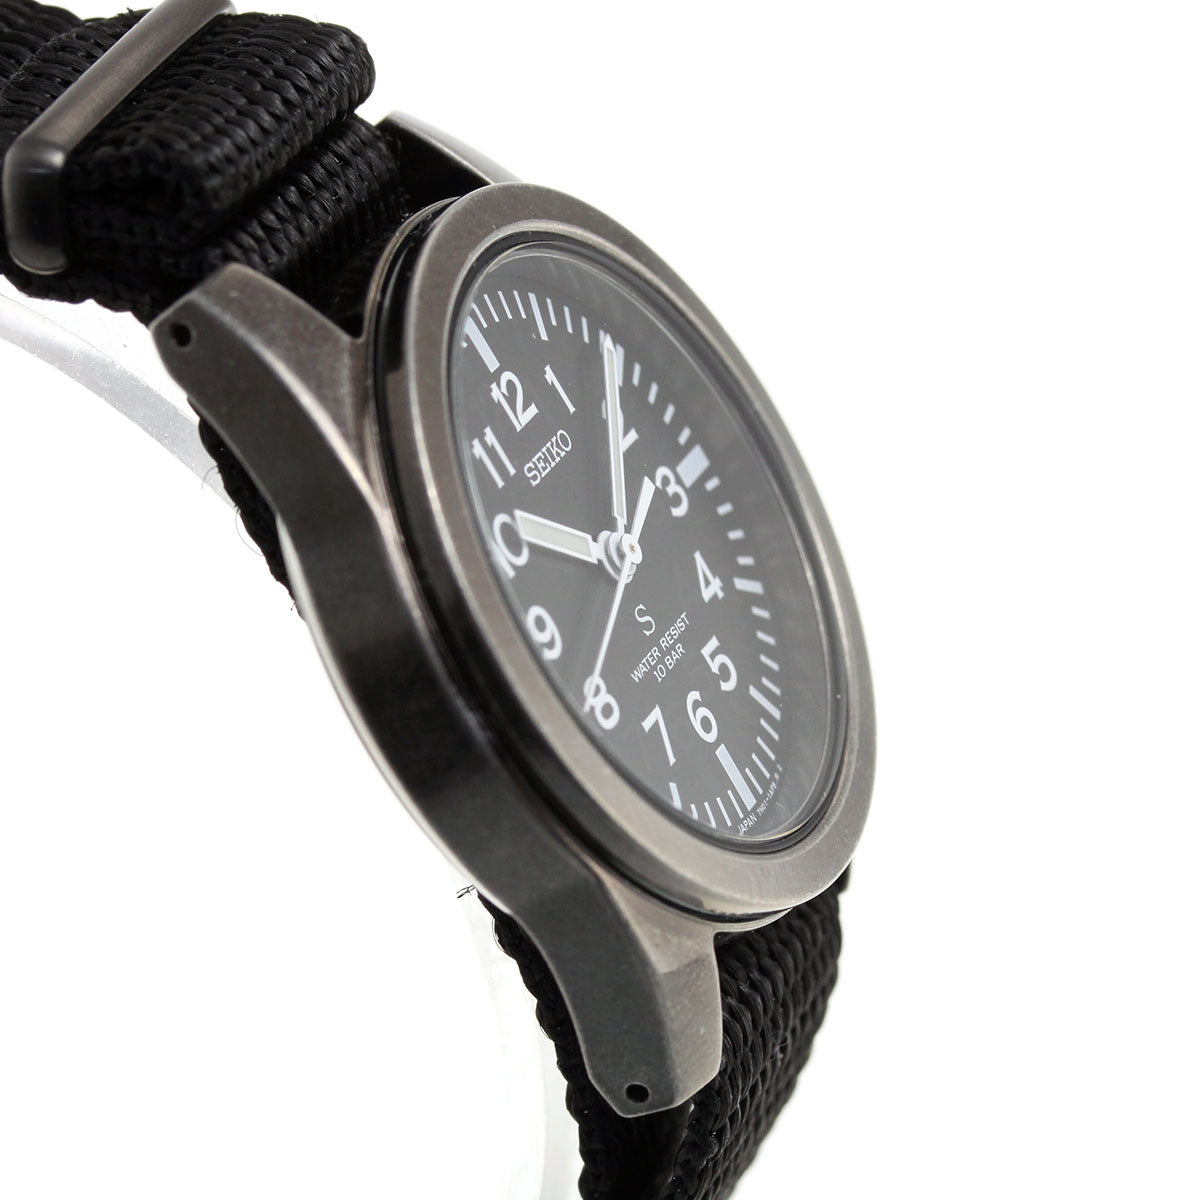 セイコー セレクション SEIKO SELECTION SUSデザイン復刻モデル 流通限定モデル 腕時計 メンズ nano・universe SCXP159